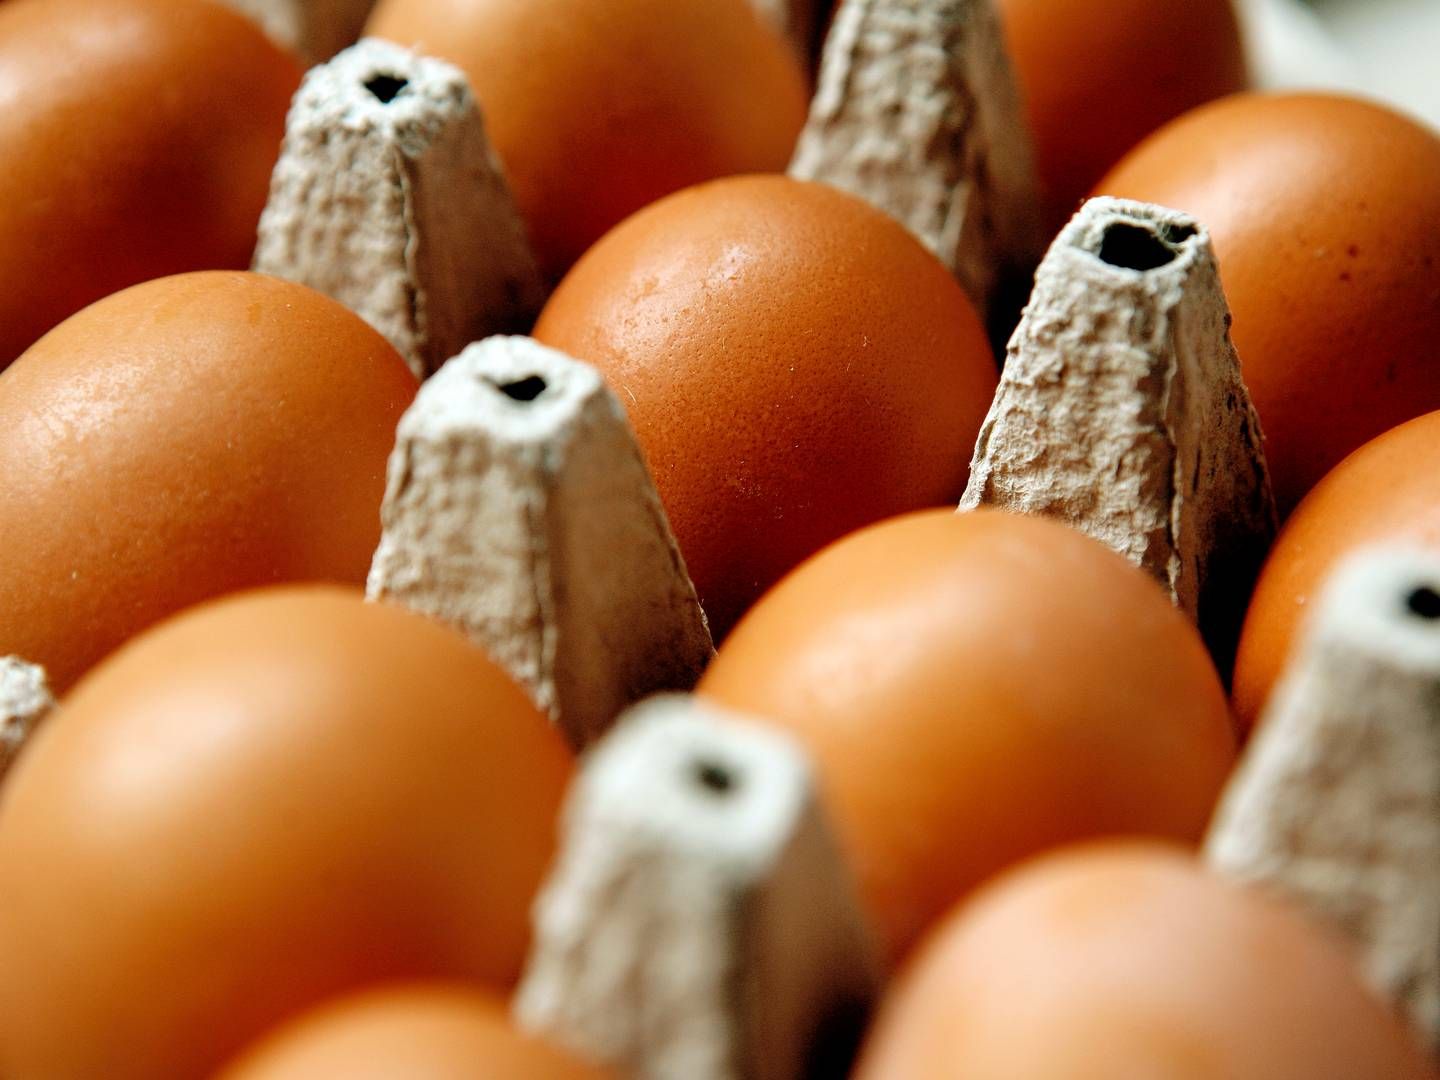 Styrelsens ansatte vil frem mod nytår kontrollere omkring 200 private sælgere af æg, mælk og kød. | Foto: Thomas Borberg